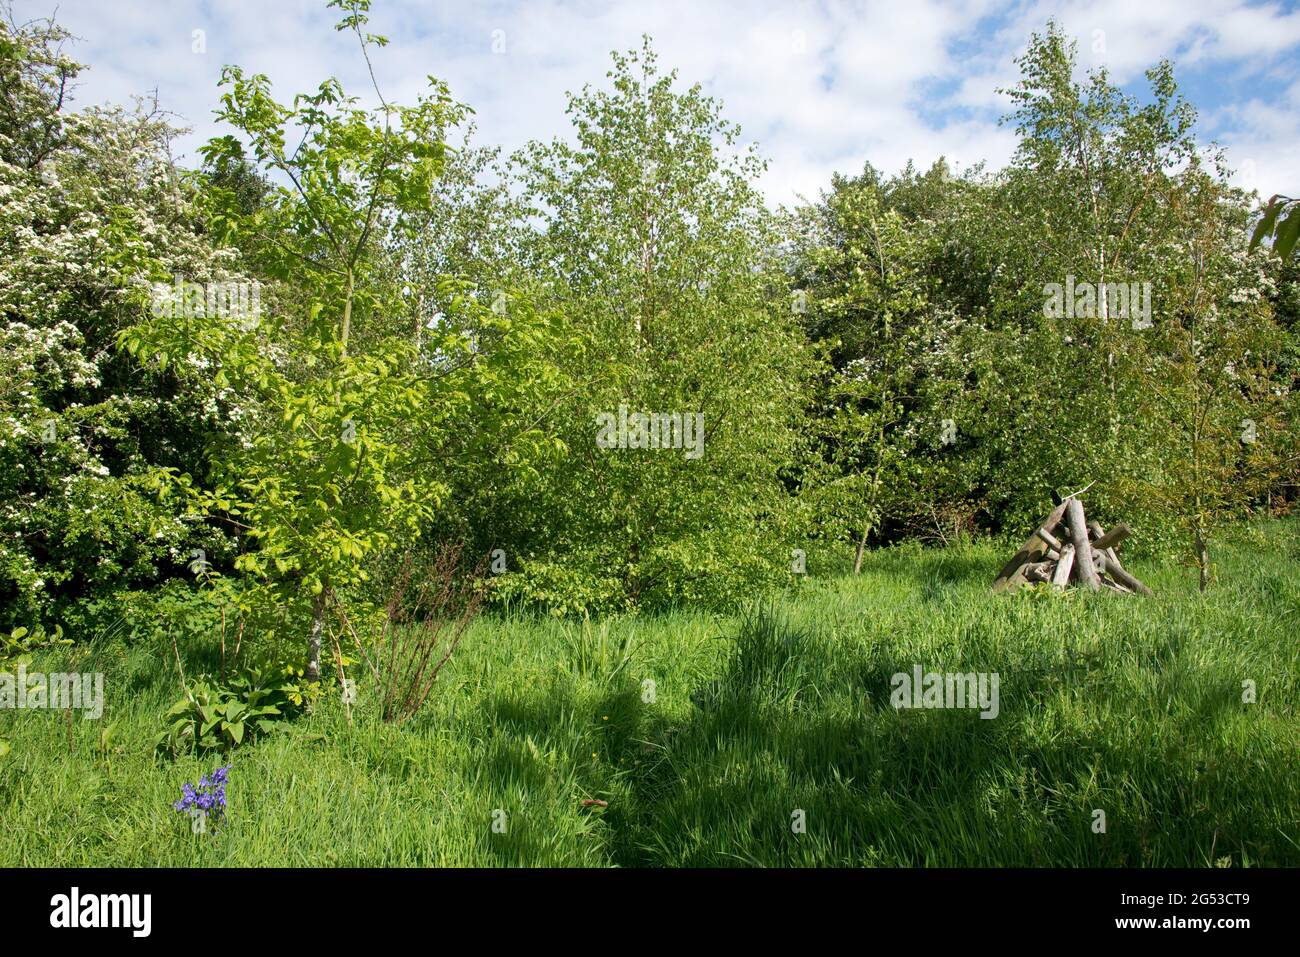 Pequeño jardín arbolado con árboles en primavera, hierba larga, céspedes y un refugio de madera para mamíferos e invertebrados, Berkshire, mayo Foto de stock